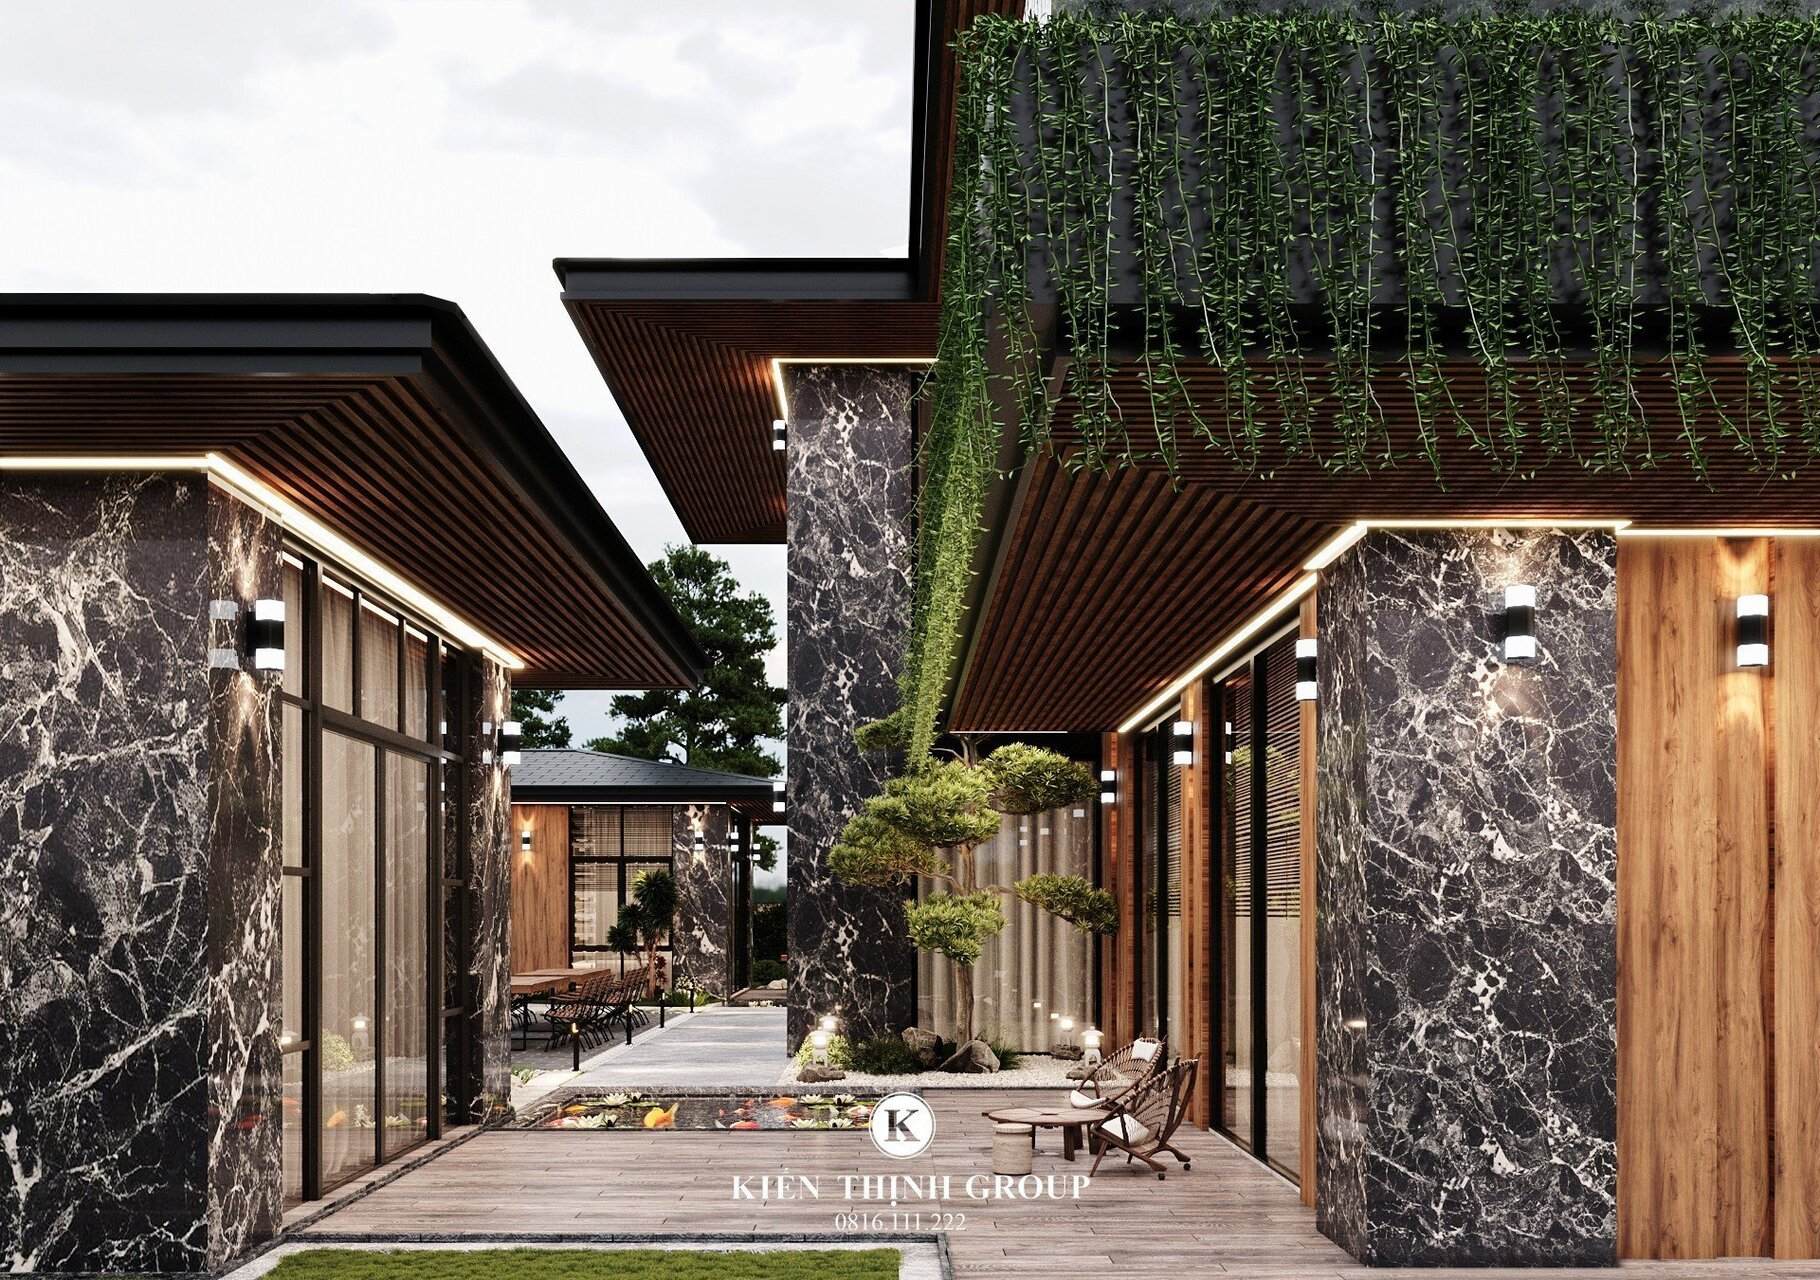 Bồn cây xanh được thiết kế xung quanh căn biệt thự hiện đại 2 tầng đẹp tại Quảng Ngãi